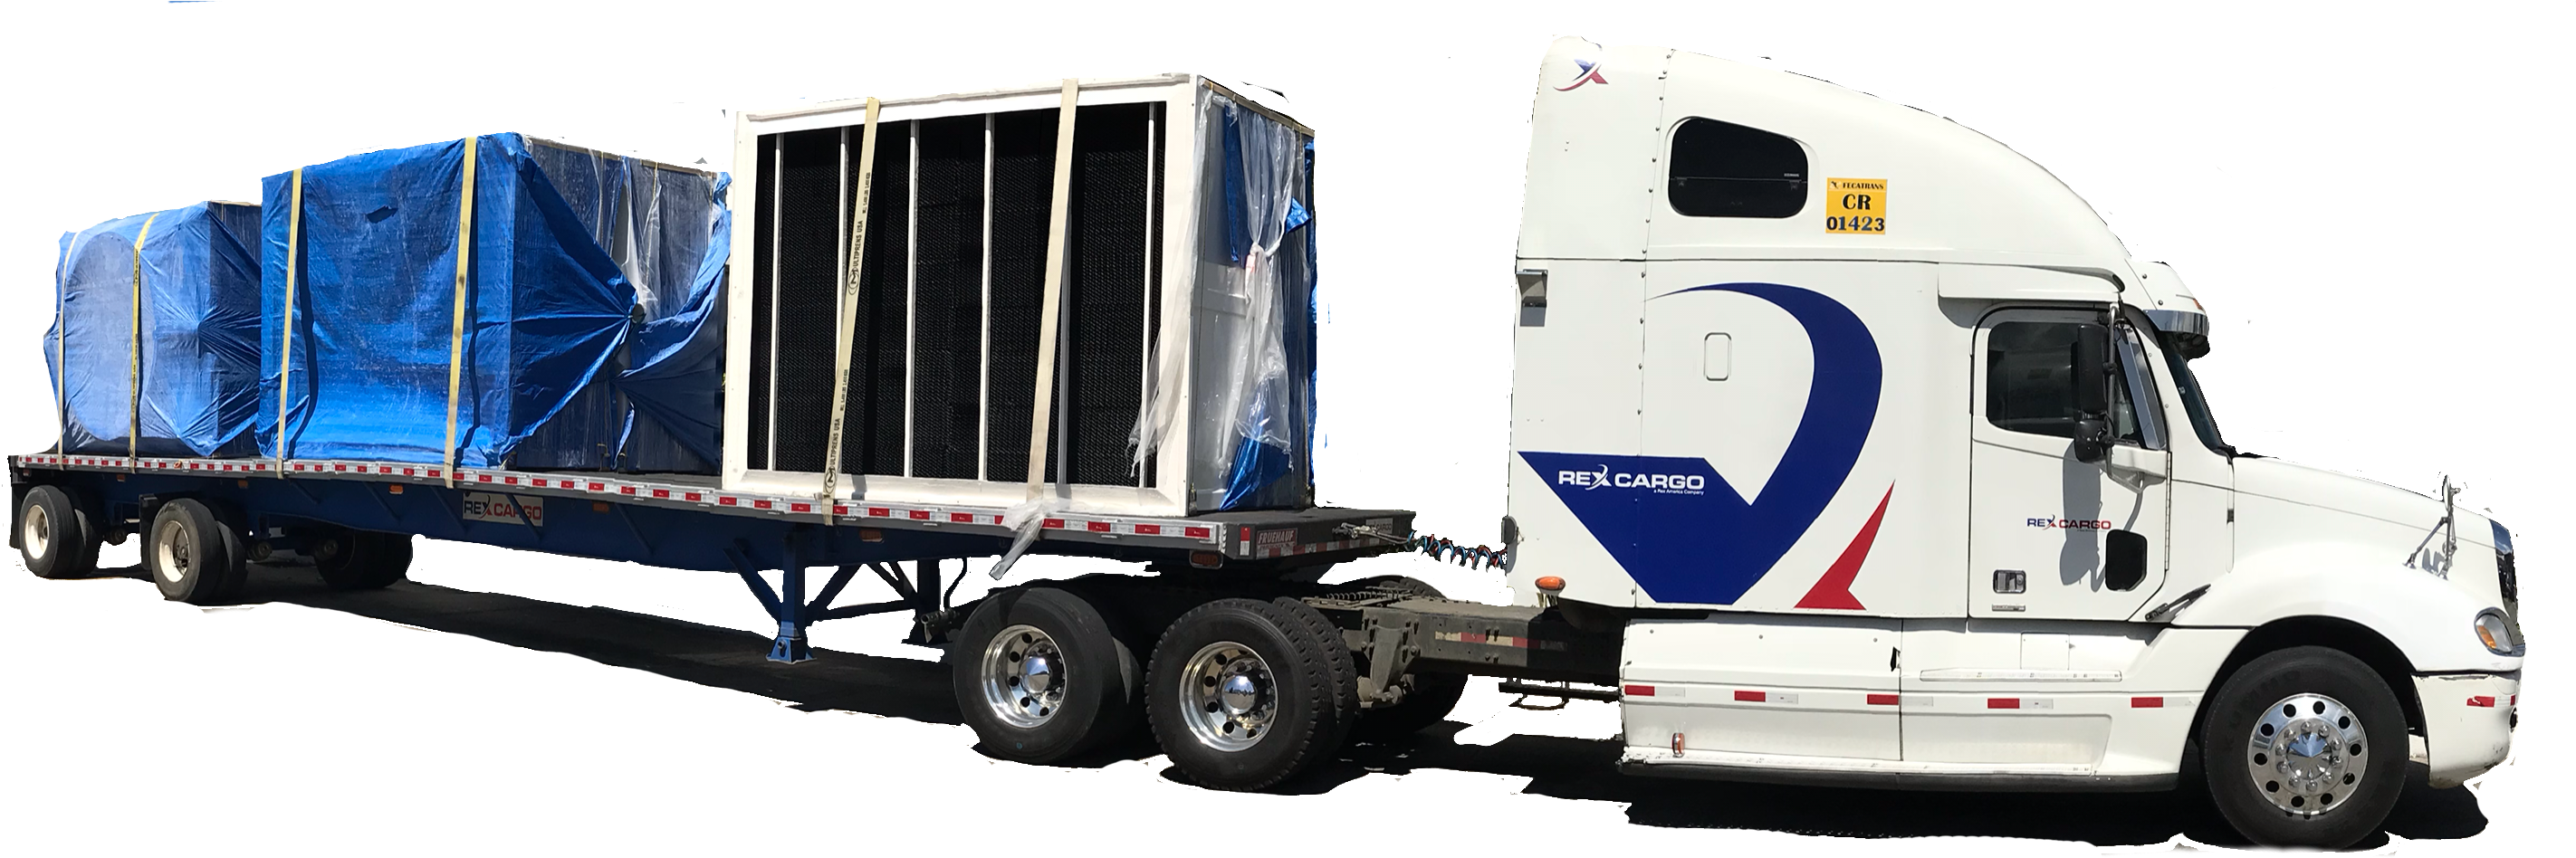 Rex Cargo Empresa De Logística En Centroamérica- Servicio - Trailer Truck Clipart (2914x982), Png Download